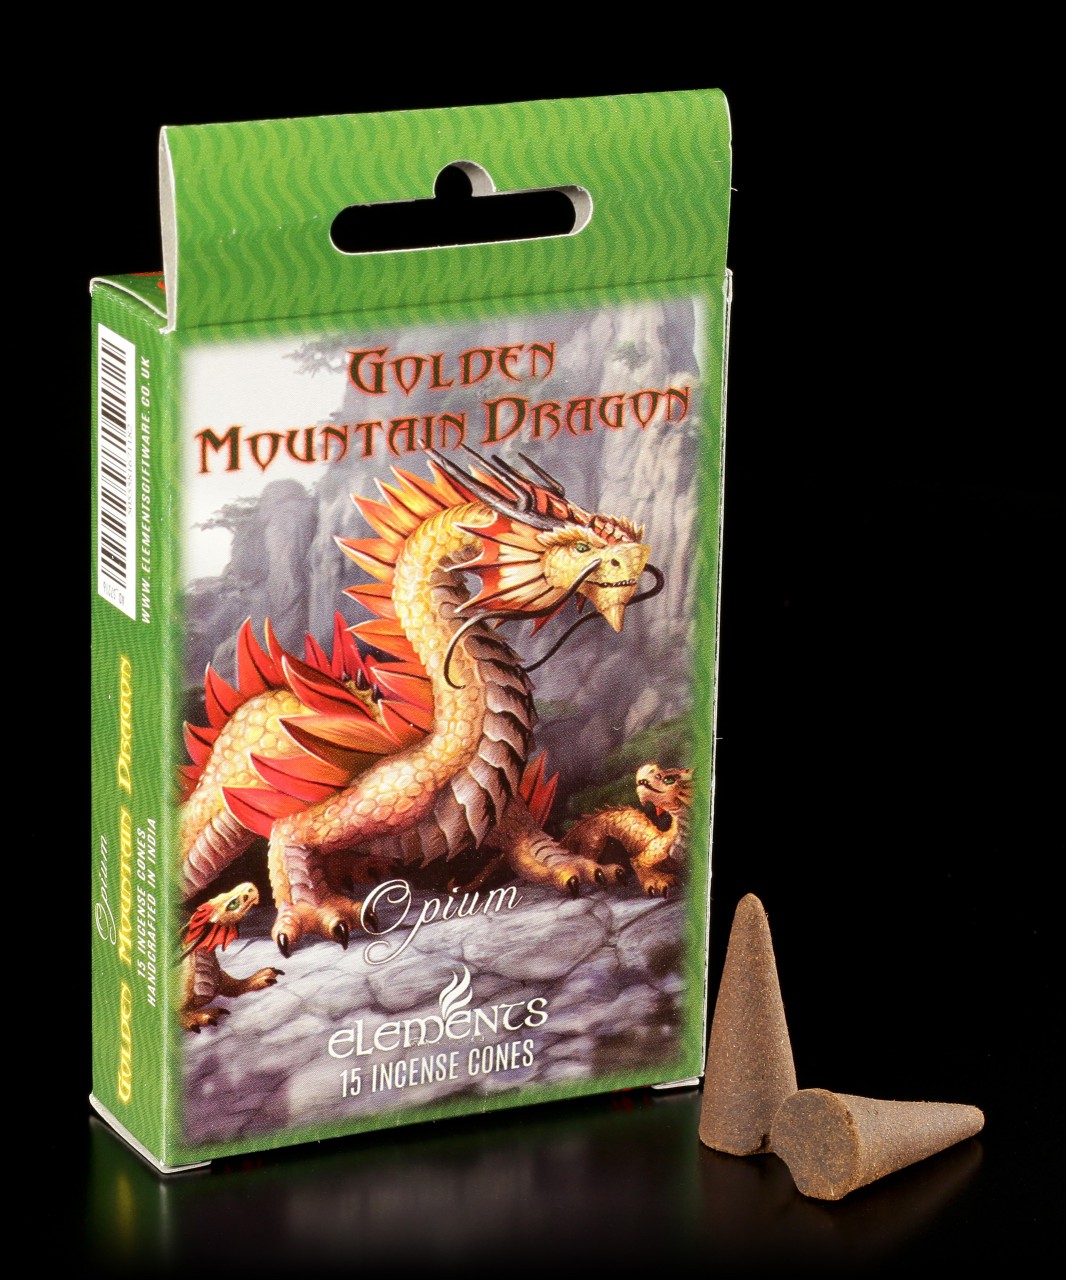 Räucherkegel Opium - Golden Mountain Dragon